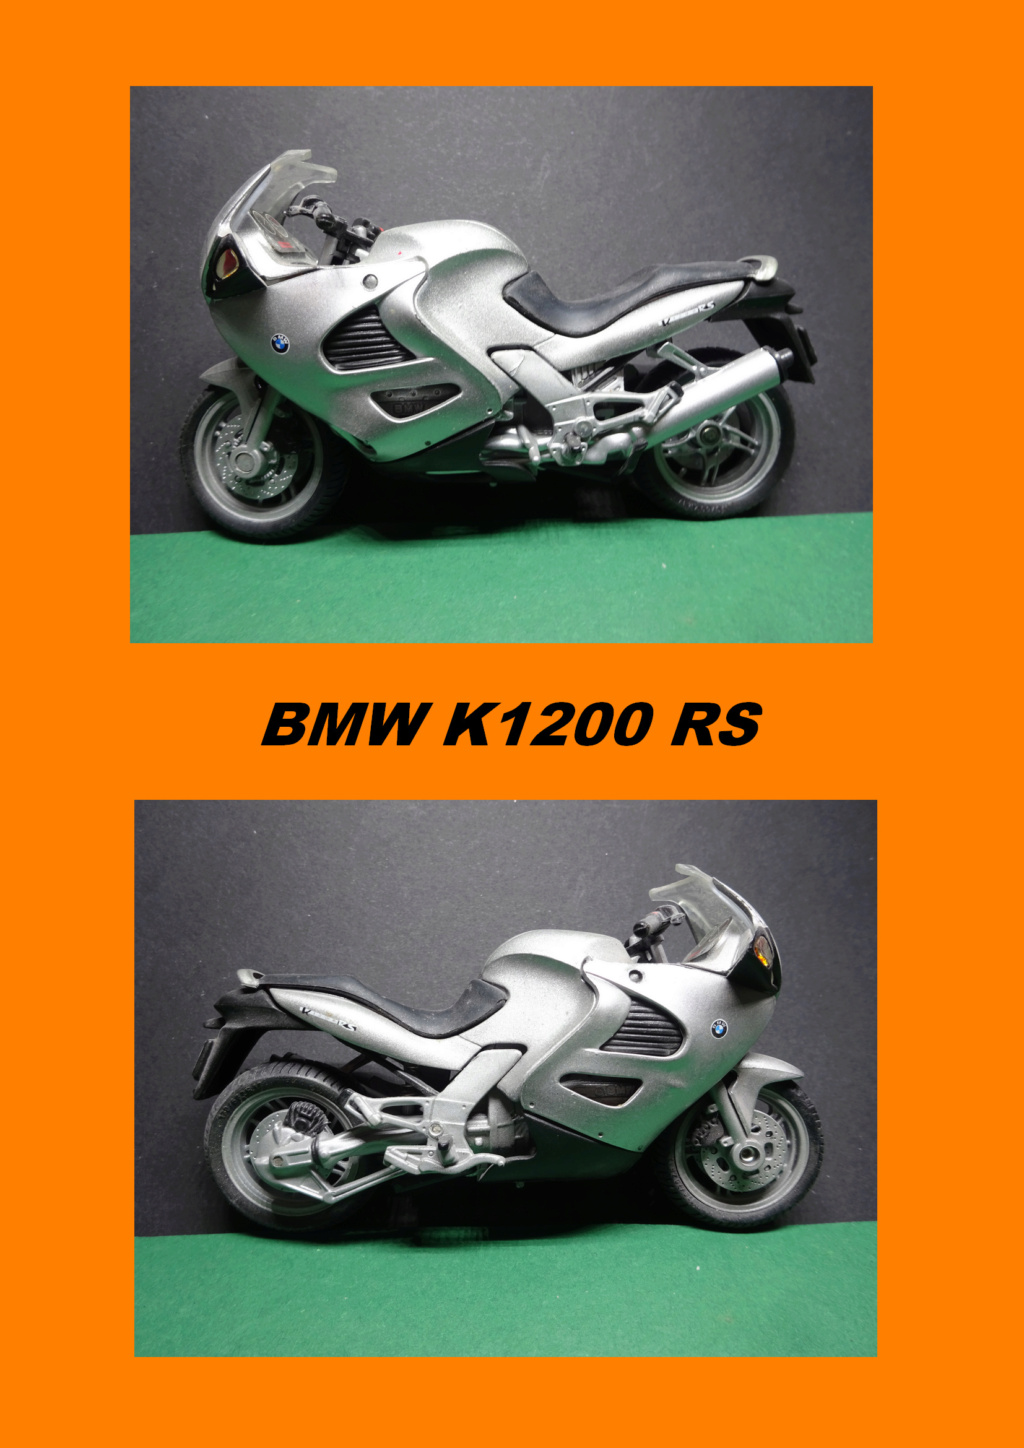 ma collection de motos au 1/18 moto de série en zamac - Page 2 05_bmp25